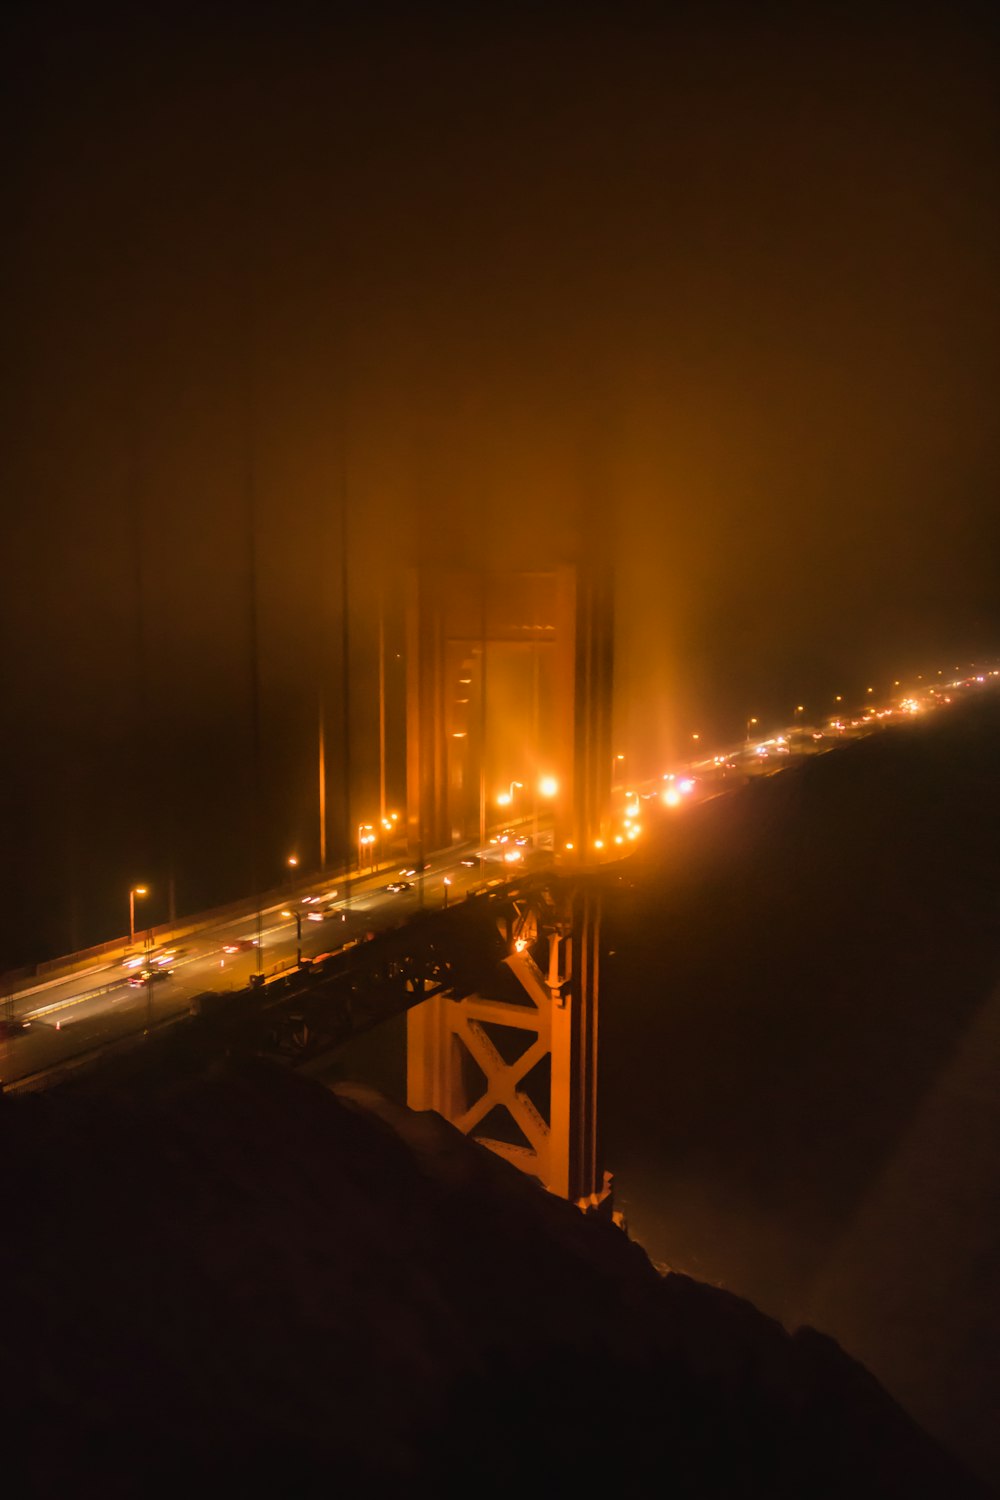 Golden Gate bridge during nighttime